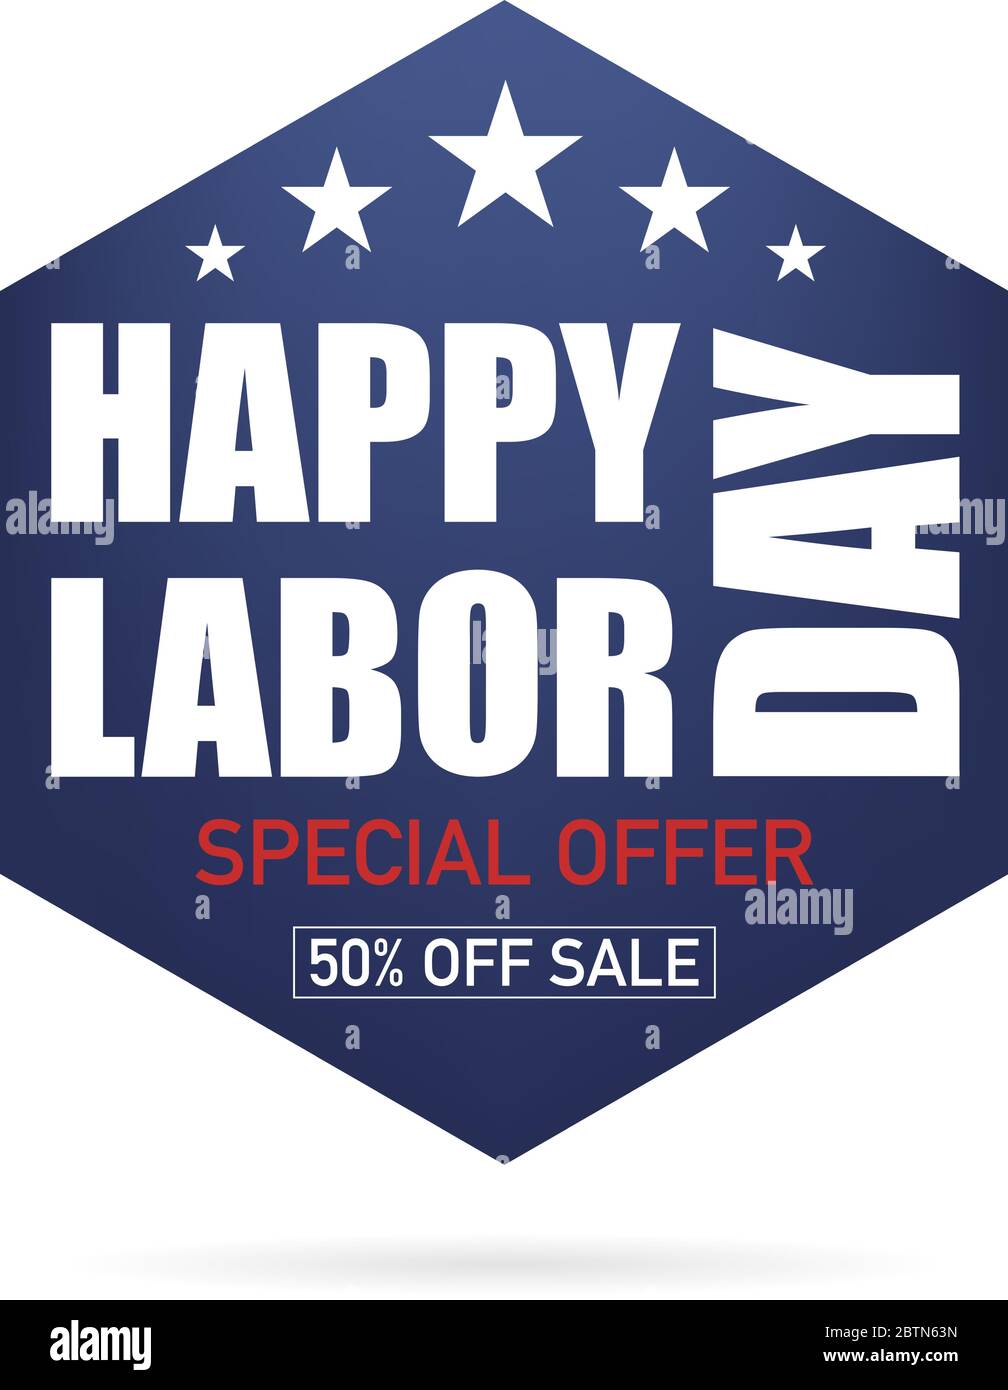 Festa del lavoro. Poster happy Labor Day. Offerte speciali di vendita. Stati Uniti d'America celebrazione. Illustrazione Vettoriale Illustrazione Vettoriale